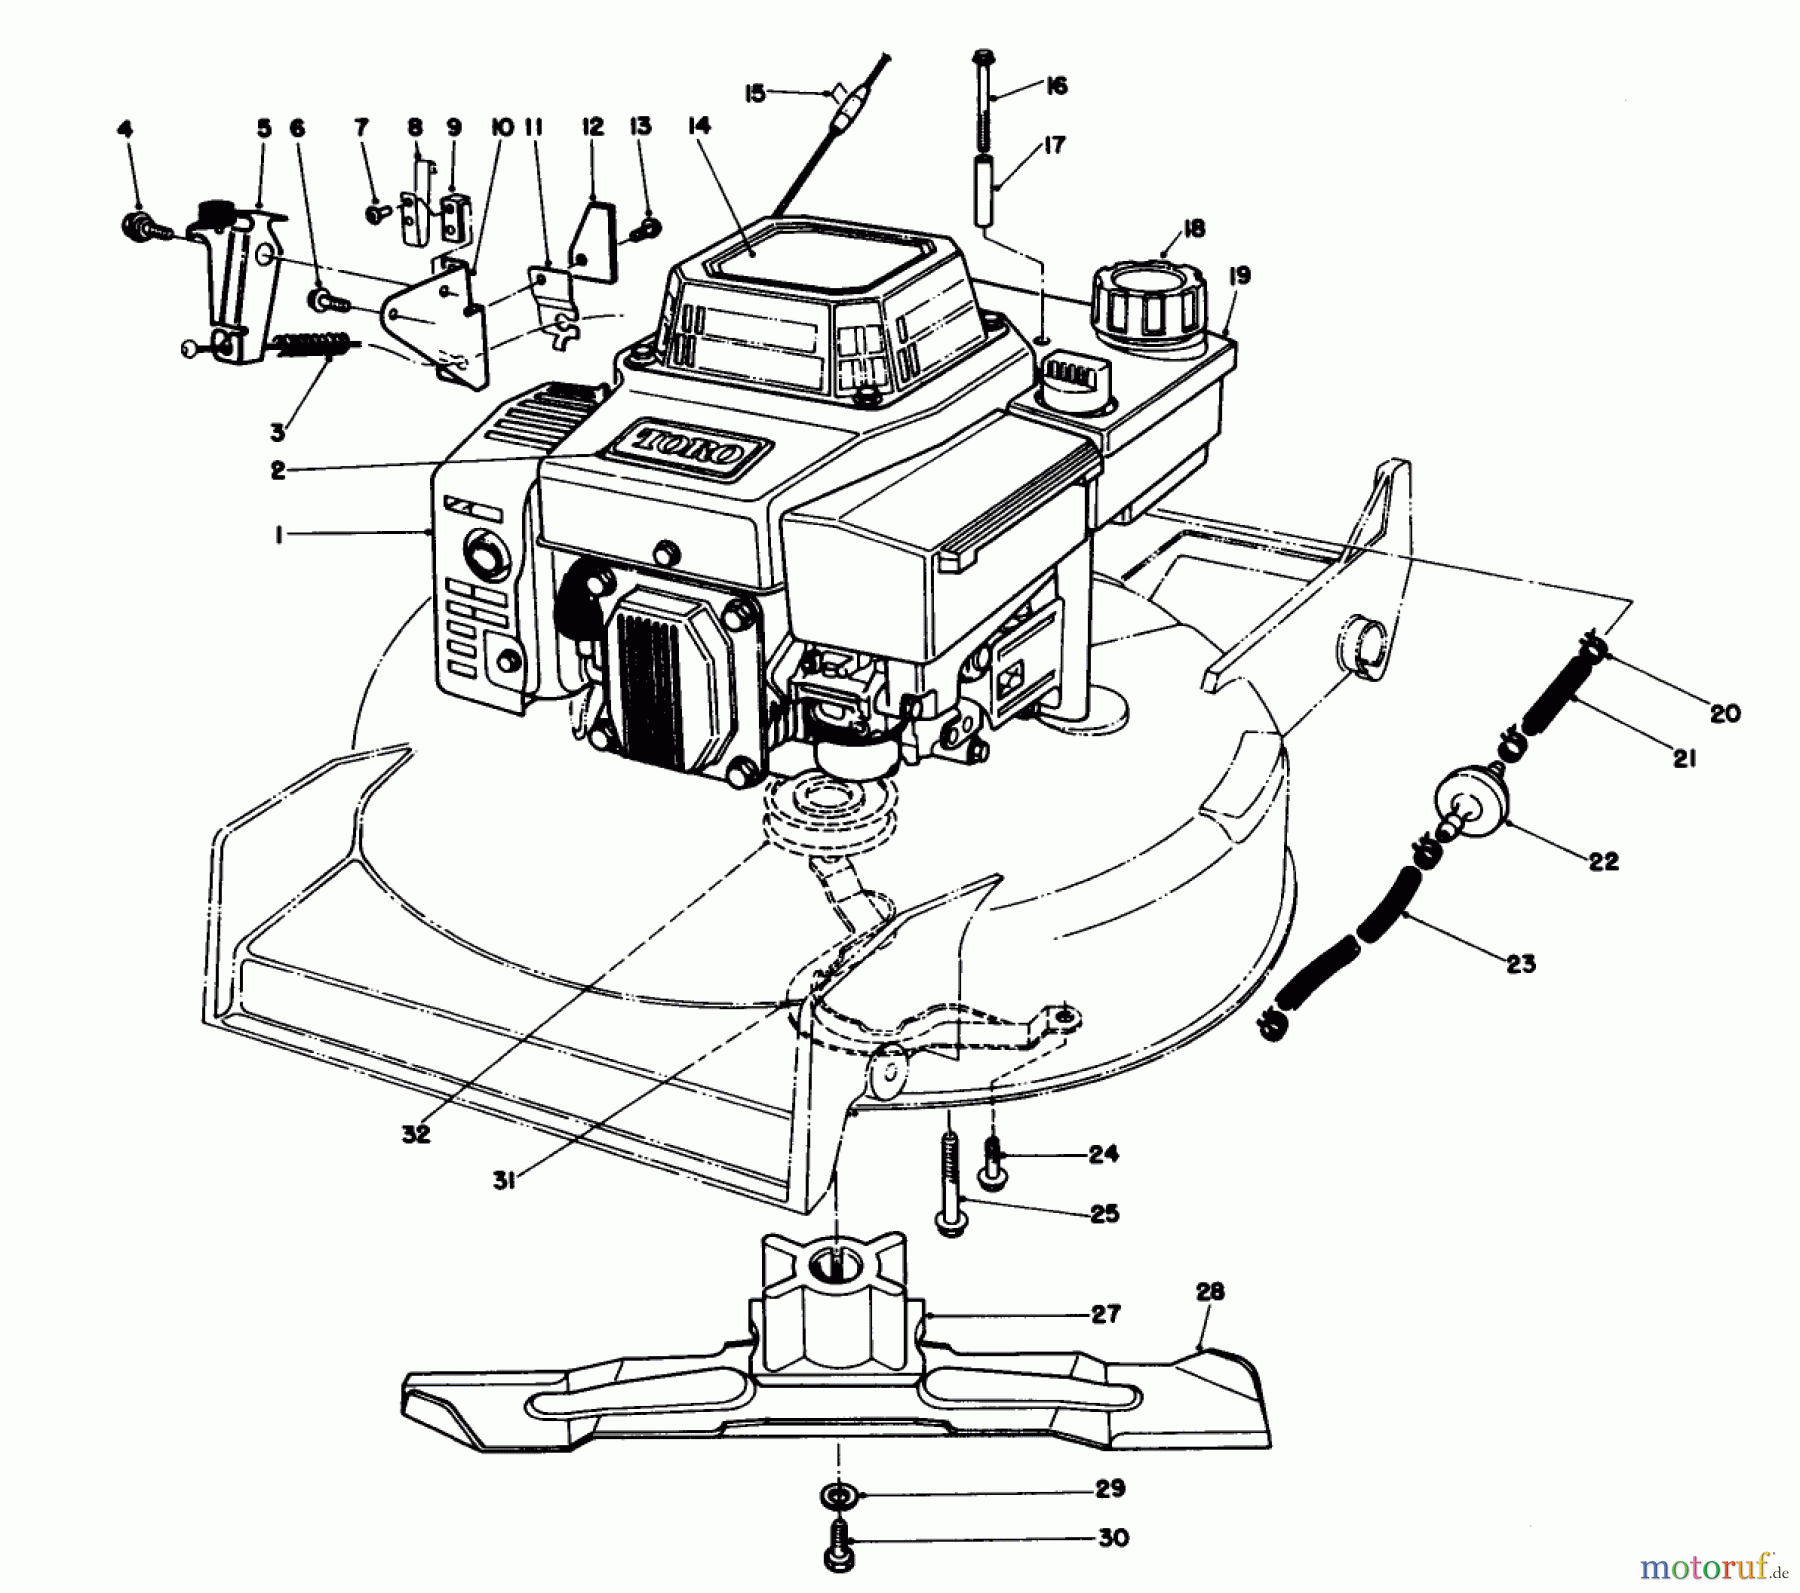  Toro Neu Mowers, Walk-Behind Seite 1 20620C - Toro Lawnmower, 1988 (8000001-8999999) ENGINE ASSEMBLY